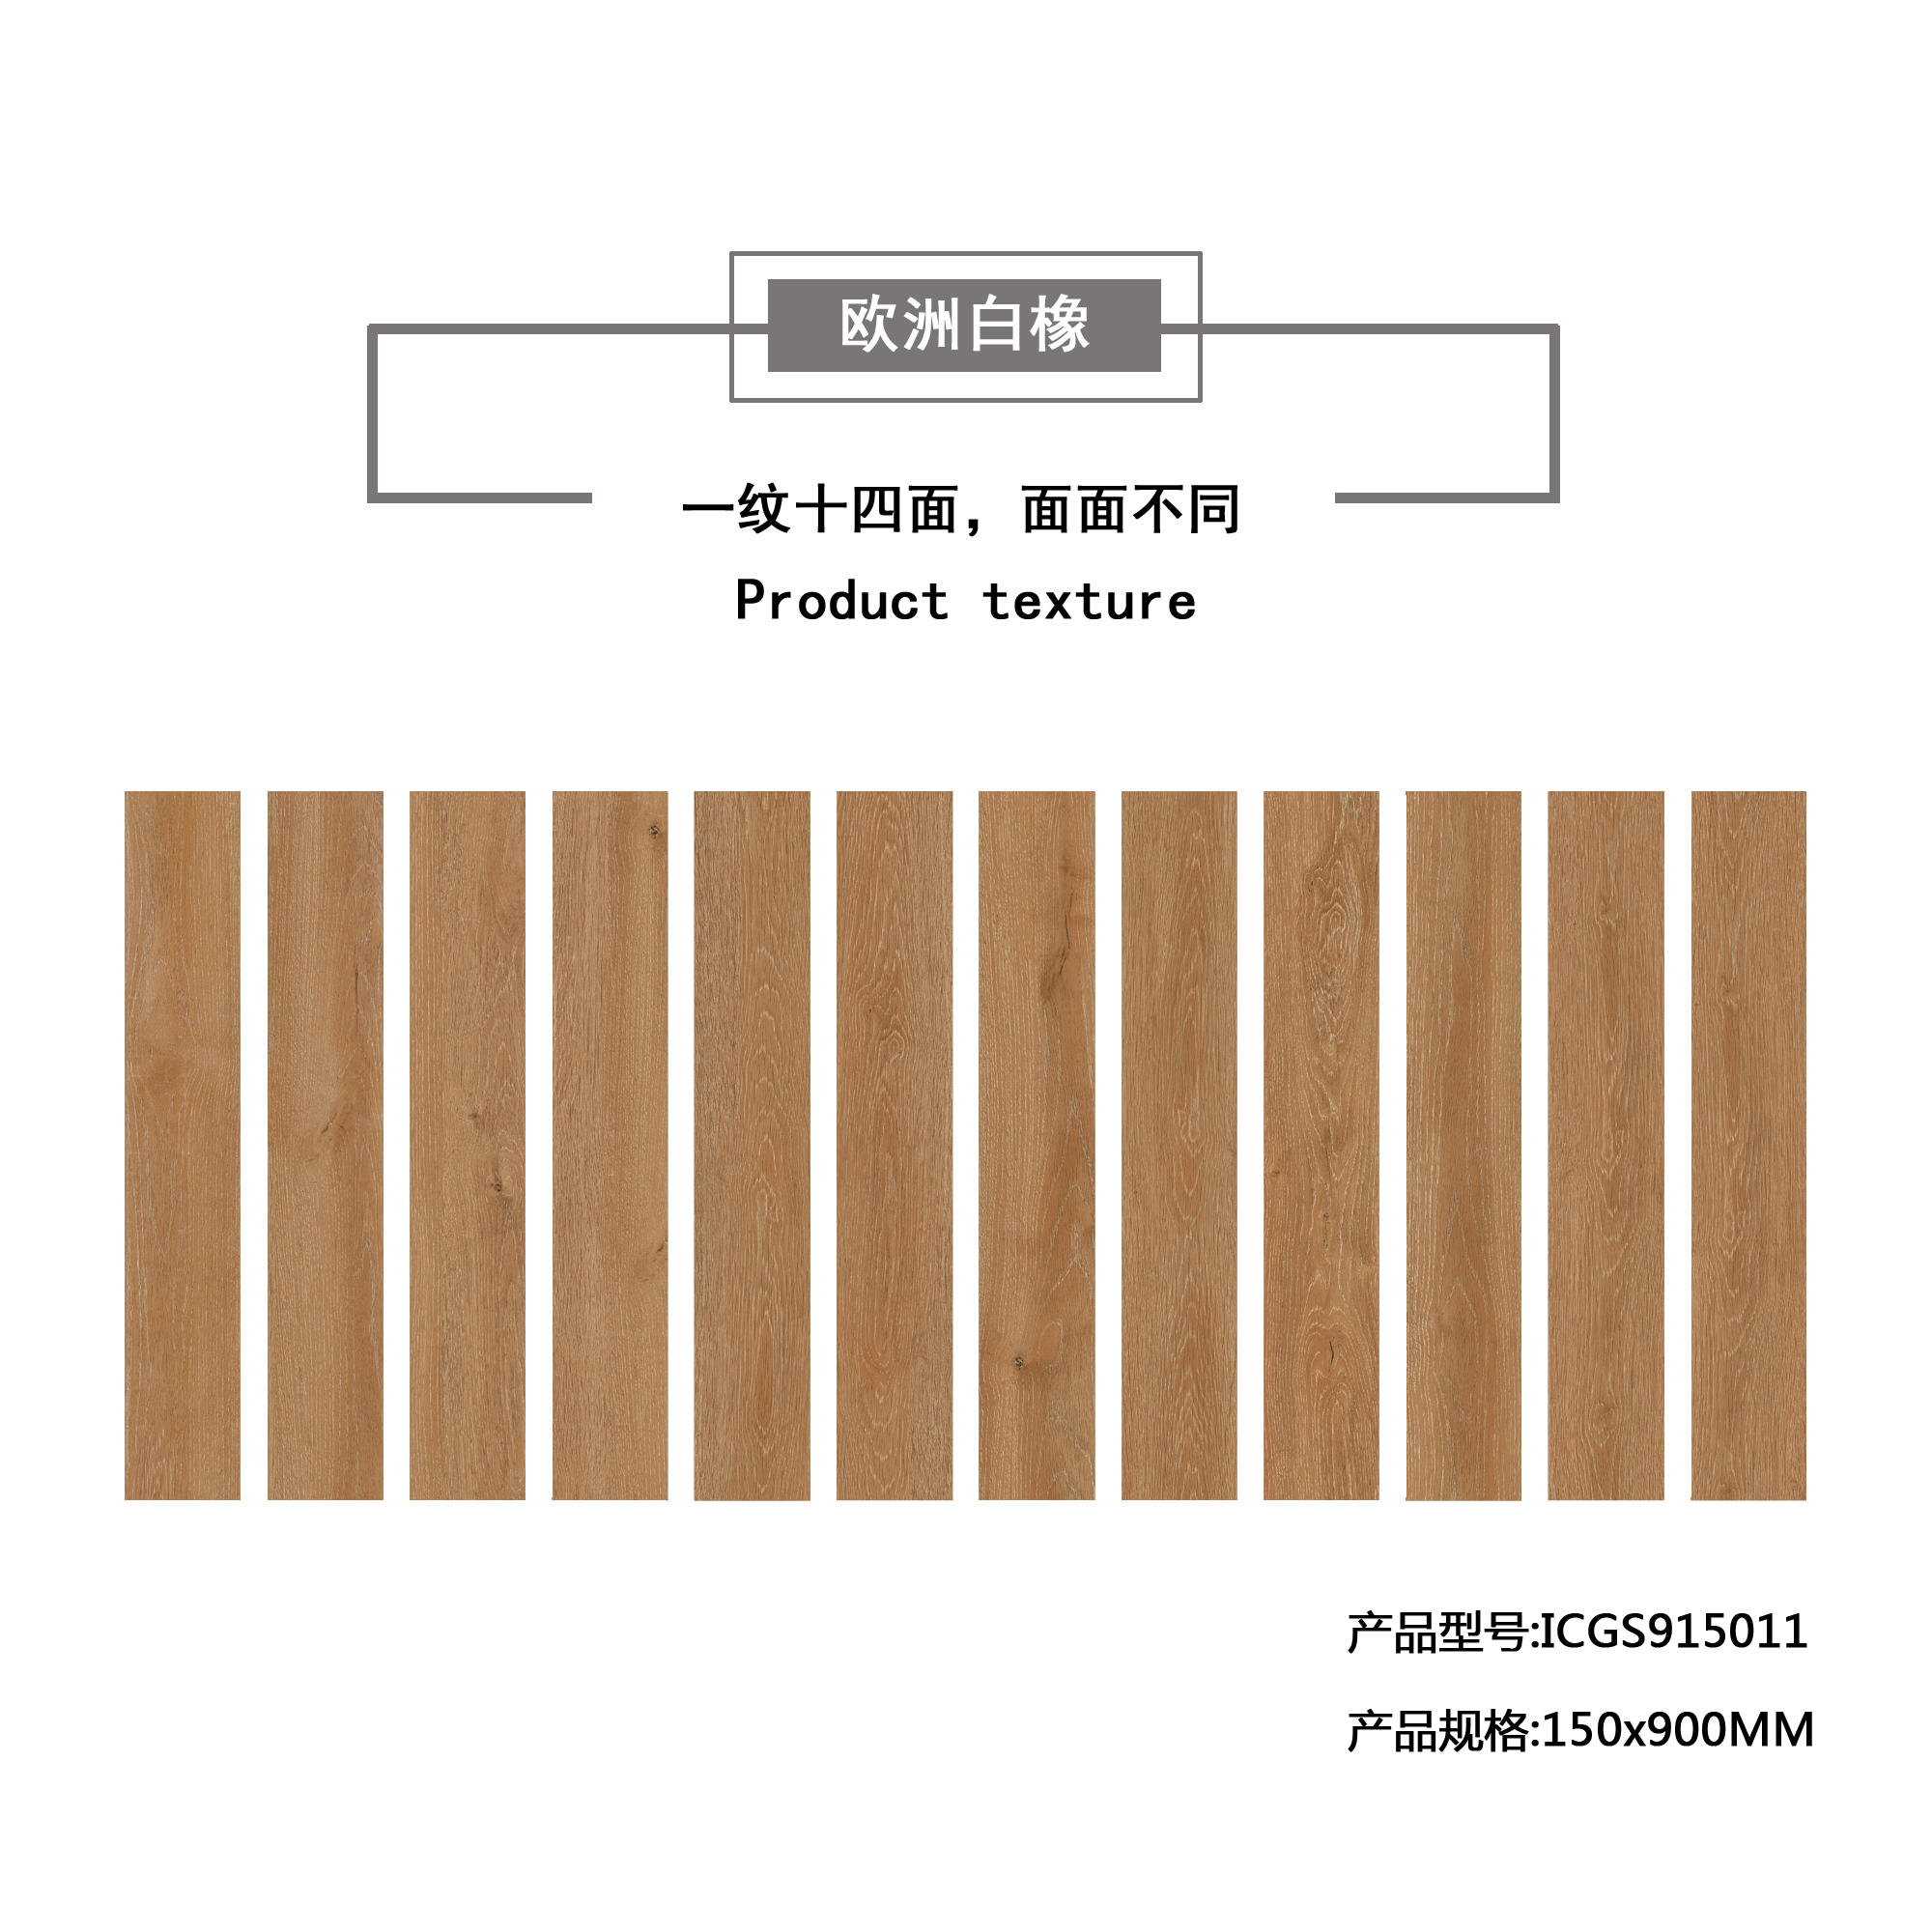 欧洲白橡（橘黄）木纹地板砖ICGS915011产品混铺图